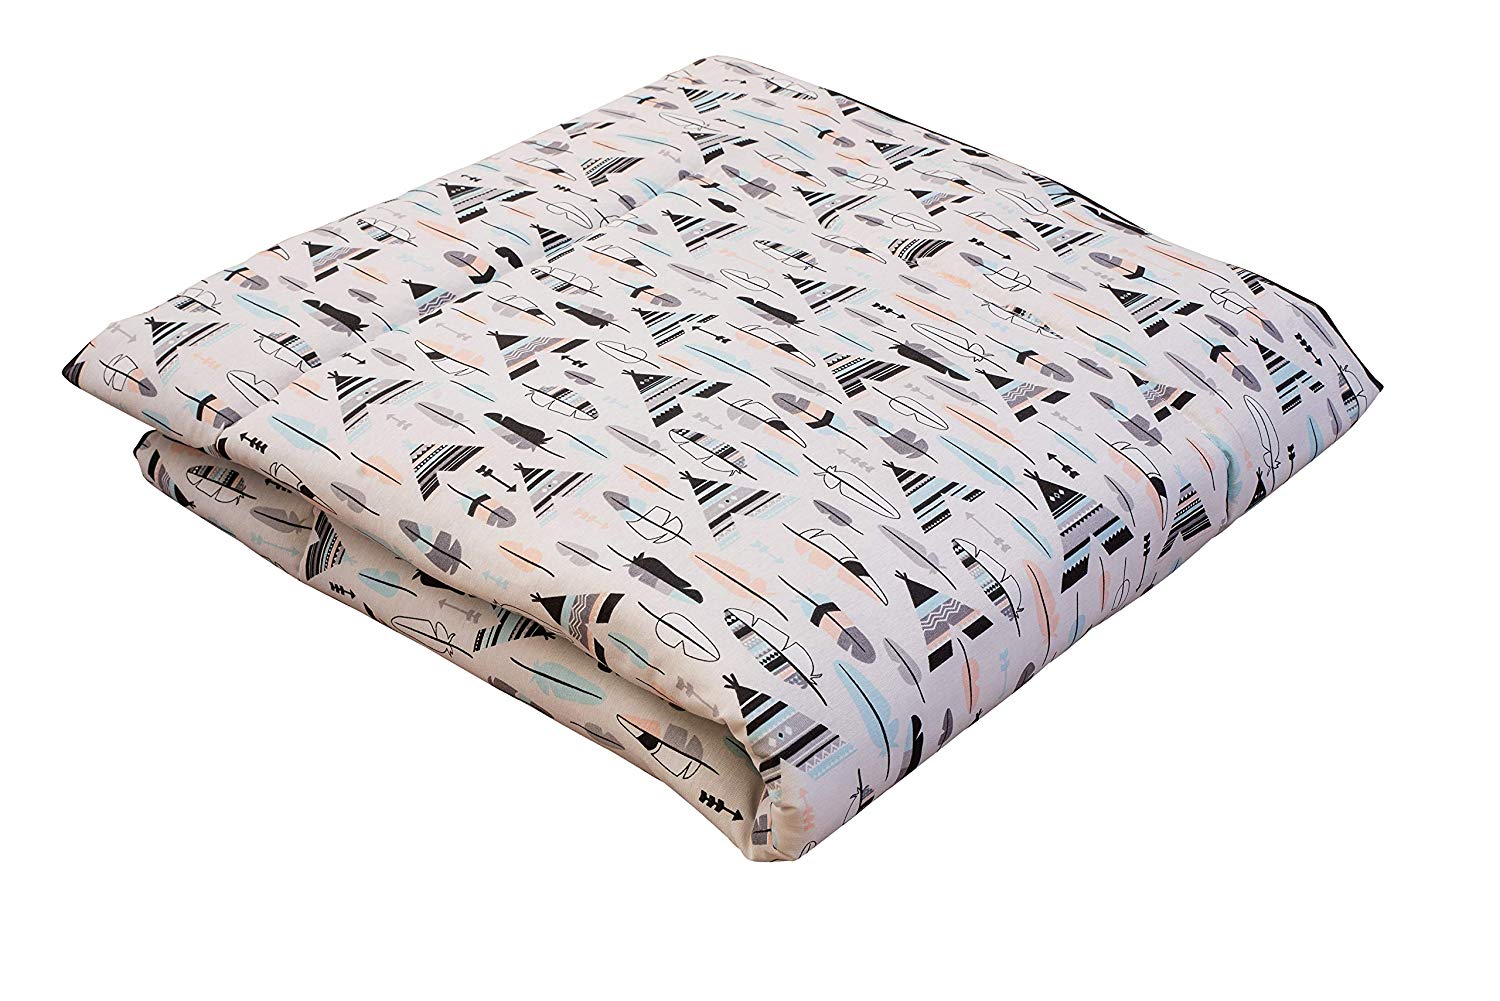 Ideenreich 2387 King Crawling Blanket 135 x 150 cm, Multi-Colour